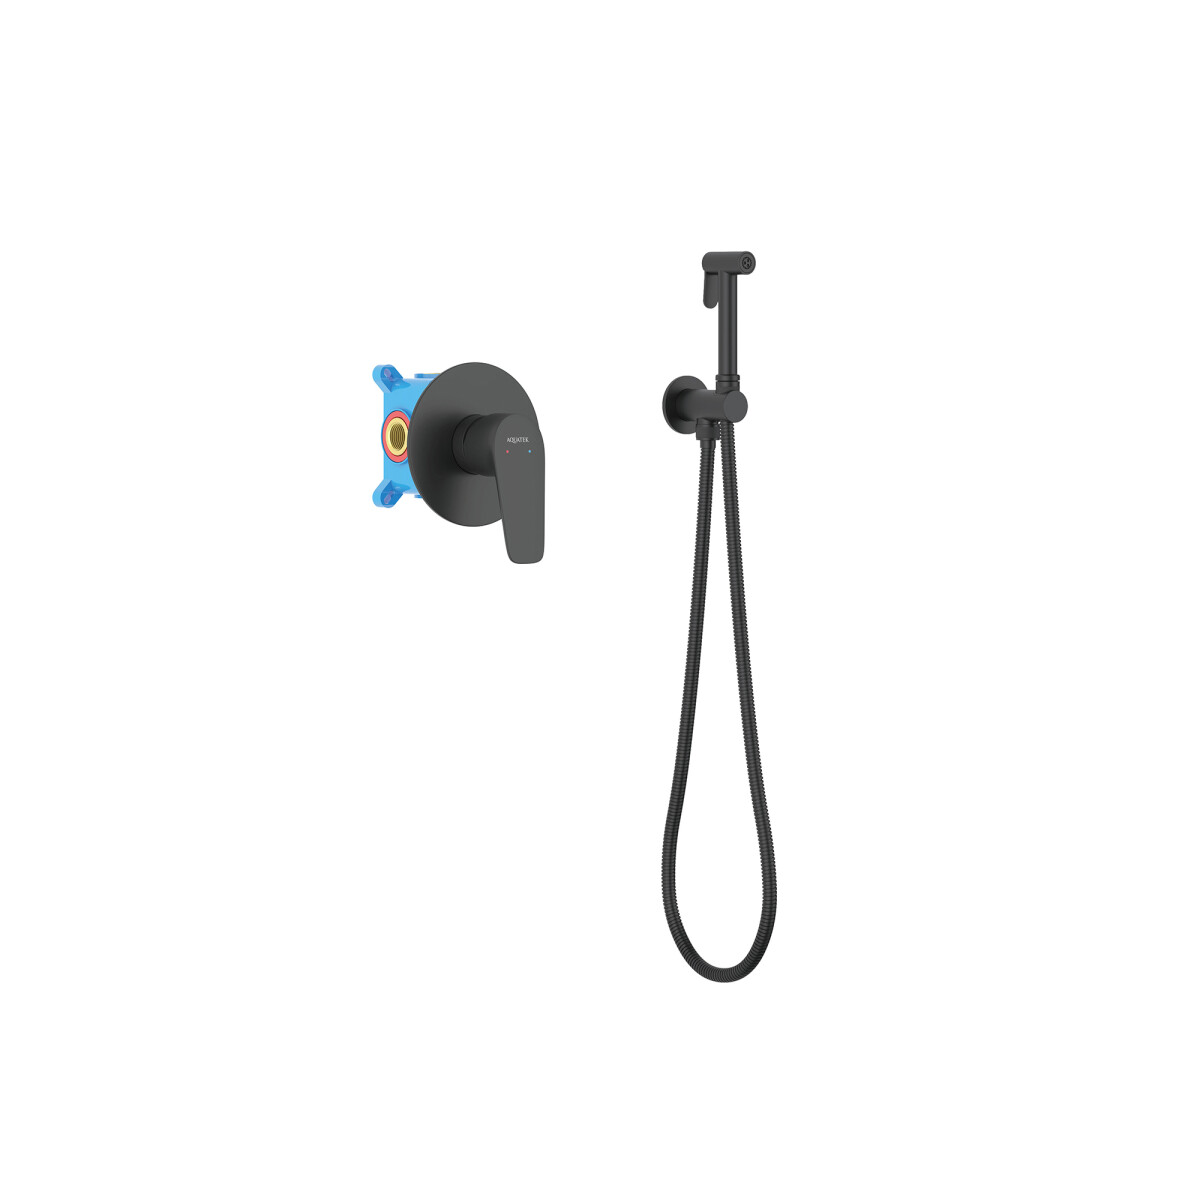 Набор с гигиеническим душем (смеситель + гигиеническая лейка + шланг + шланговое подсоединение с держателем) AQUATEK, матовый черный AQ1119MB БЕТТА